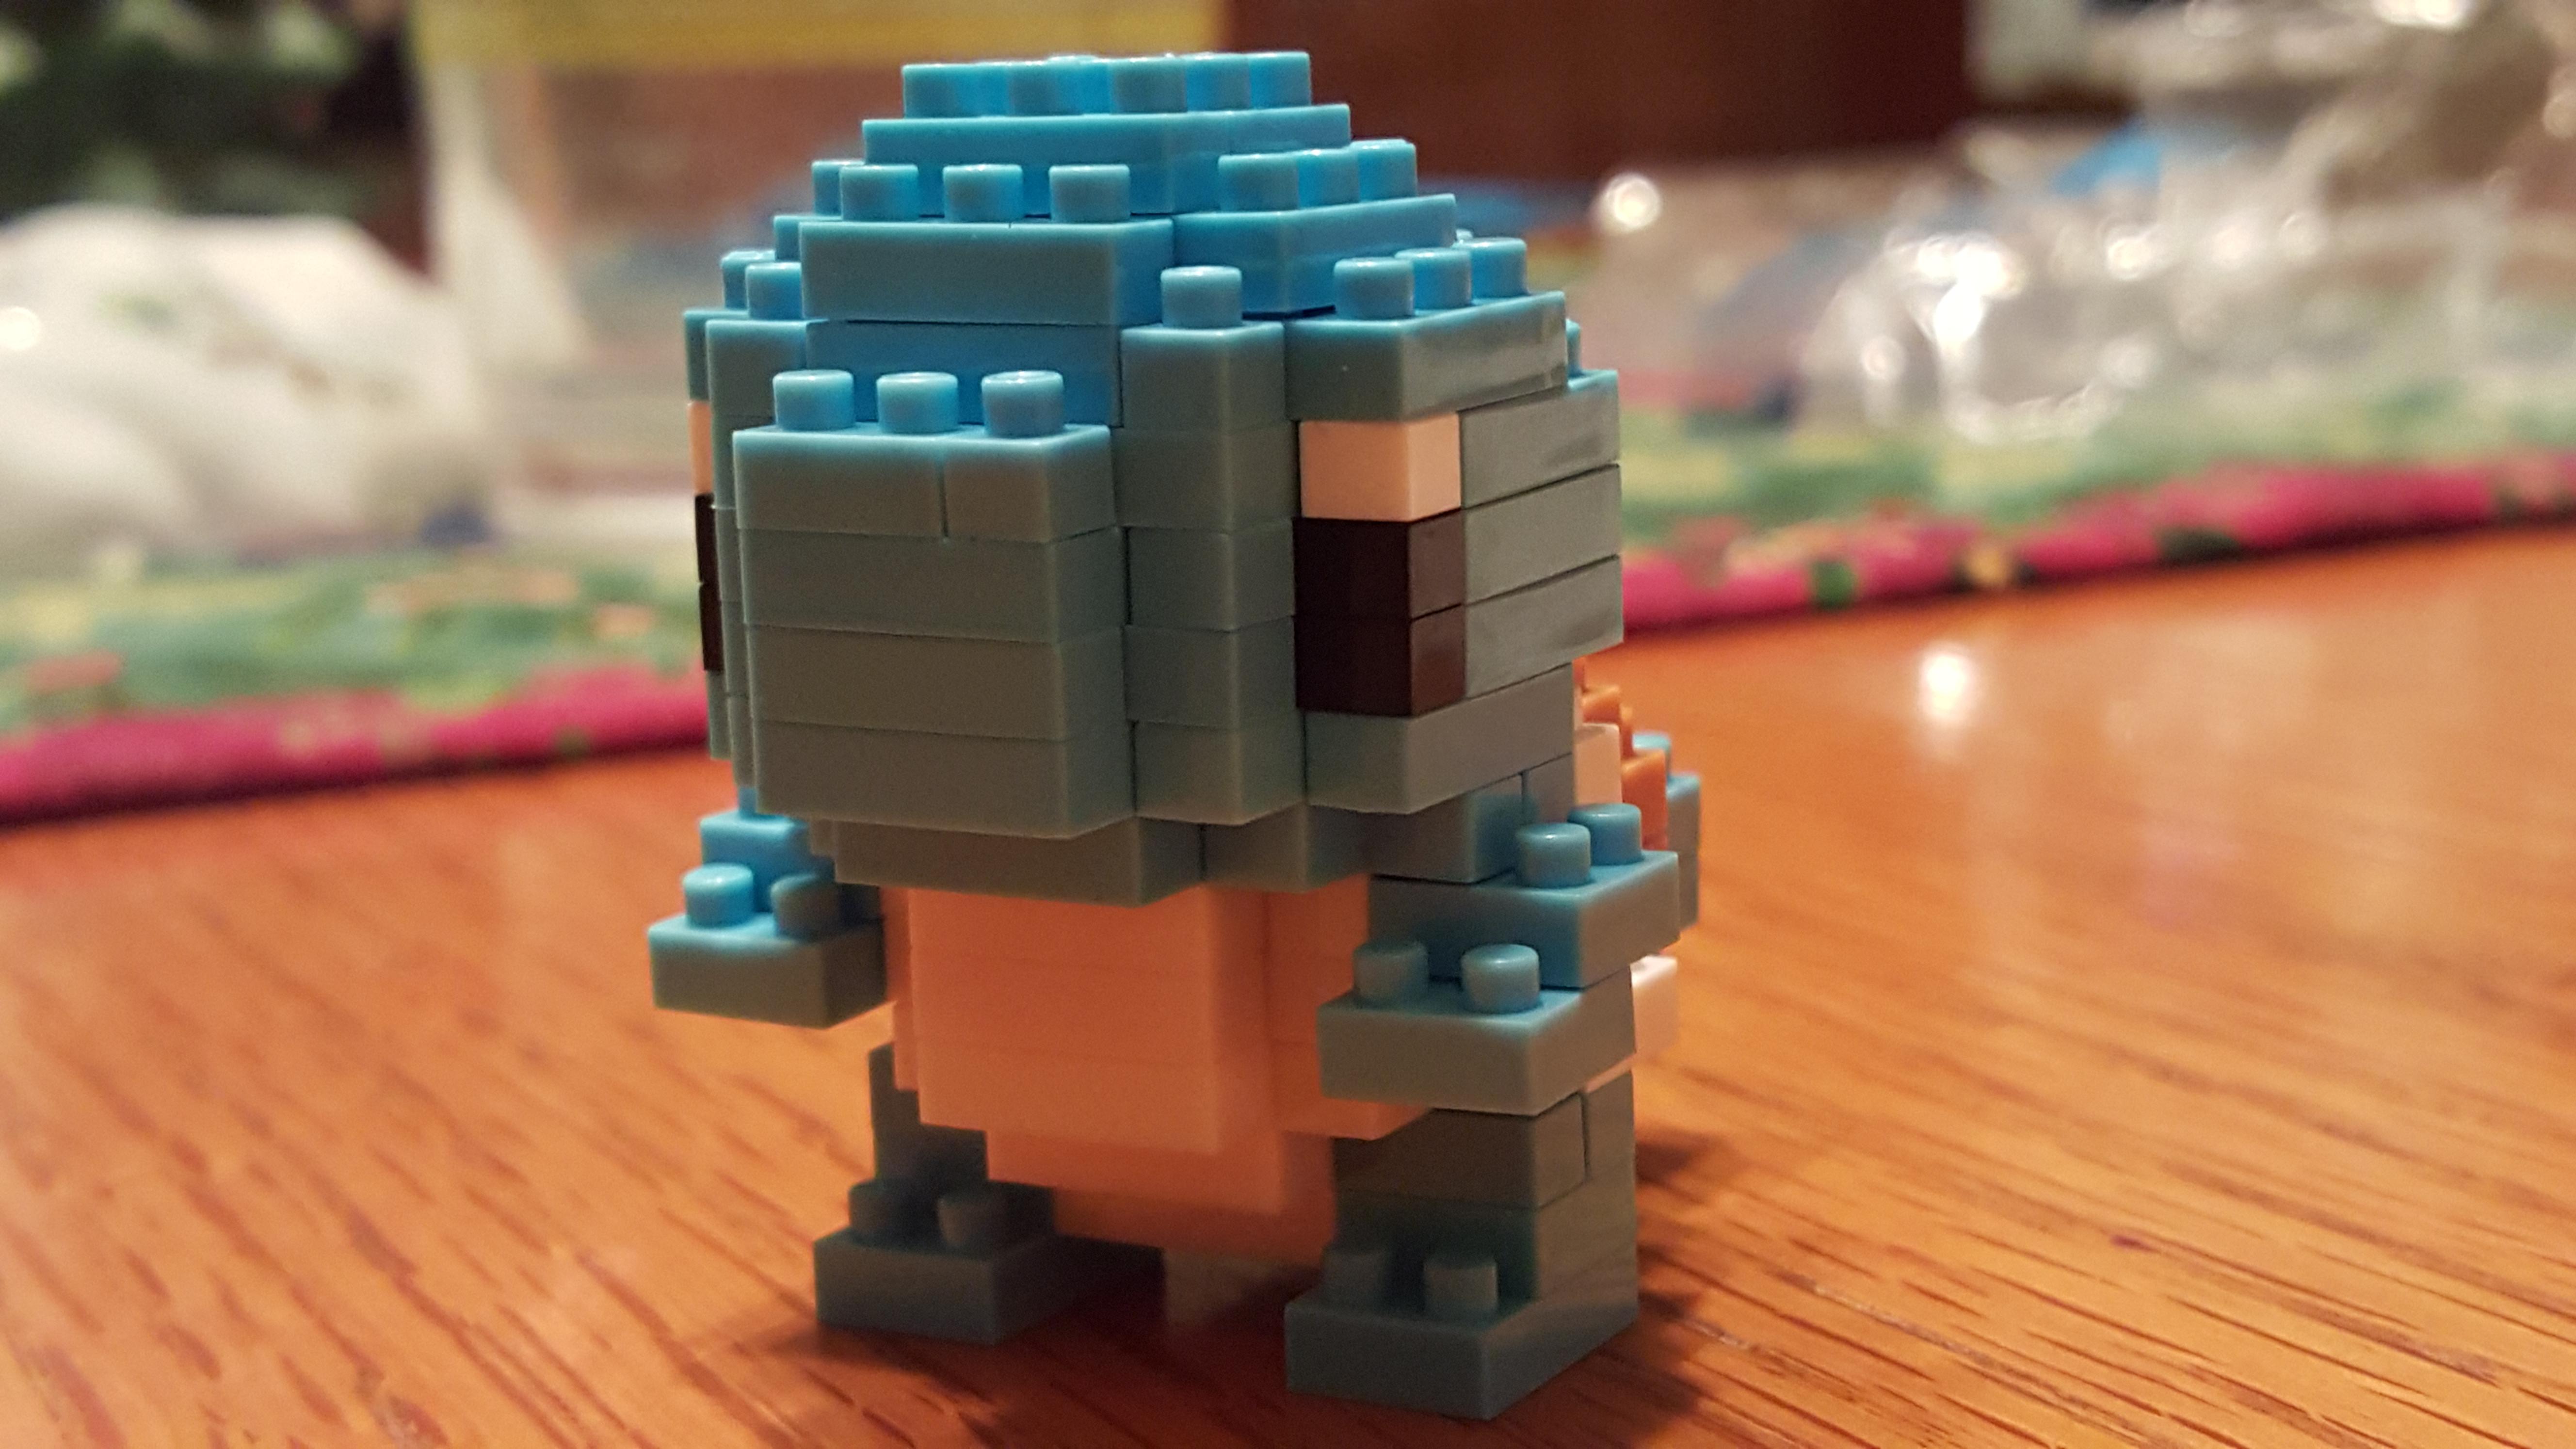 Lego Squirtle Pokemon 5312x2988